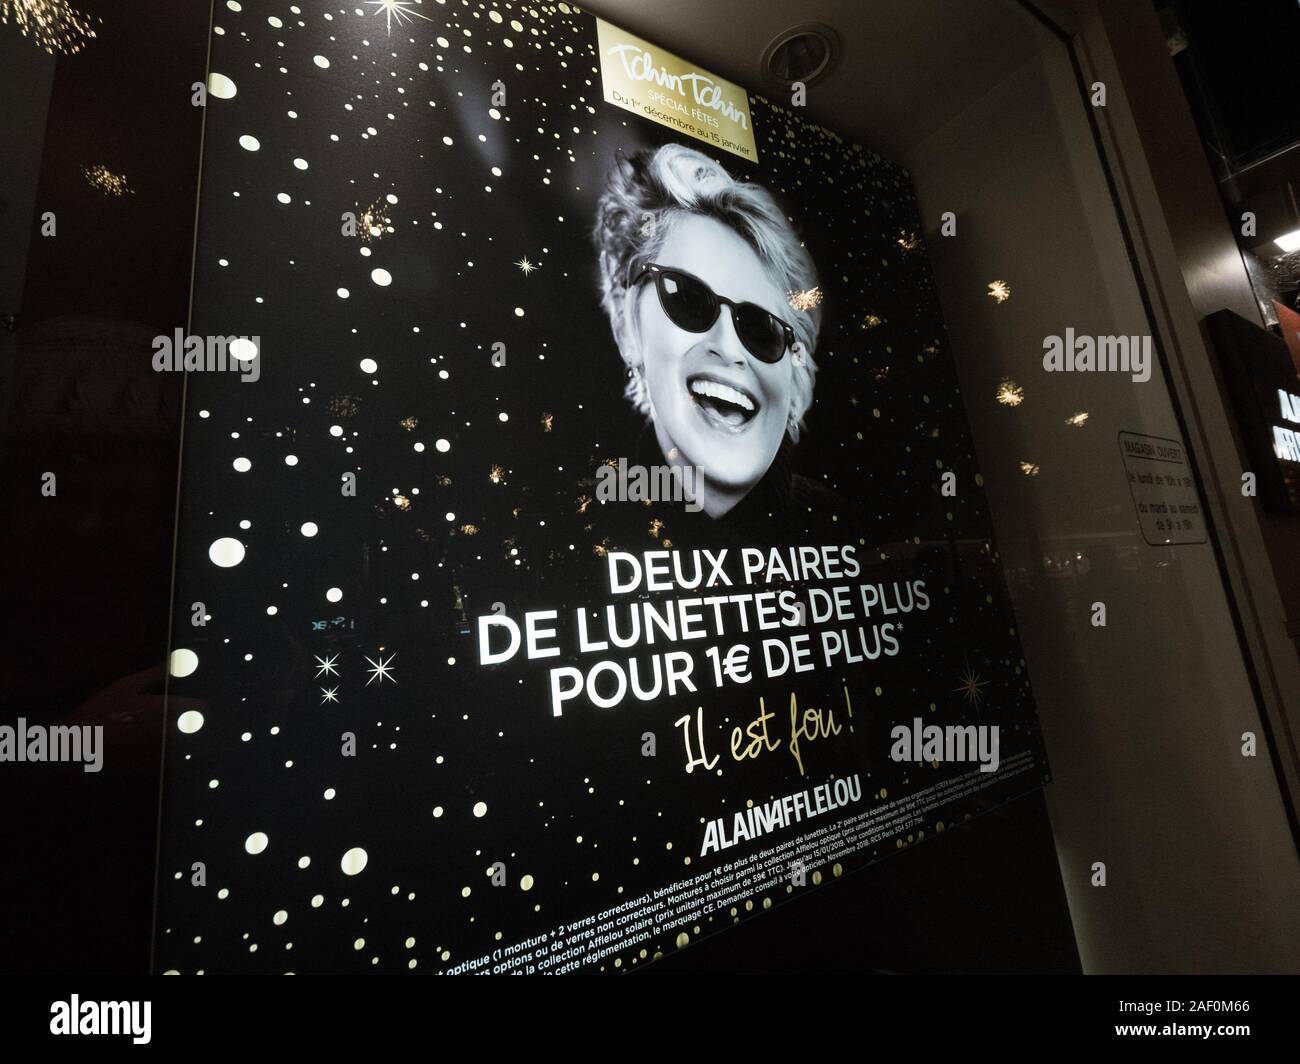 Estrasburgo, Francia - Dec 24, 2018: sonriente Sharon Stone en publicidad  escaparate de cristal óptico Alain Afflelou tienda en el centro de la  ciudad francesa de Estrasburgo Fotografía de stock - Alamy